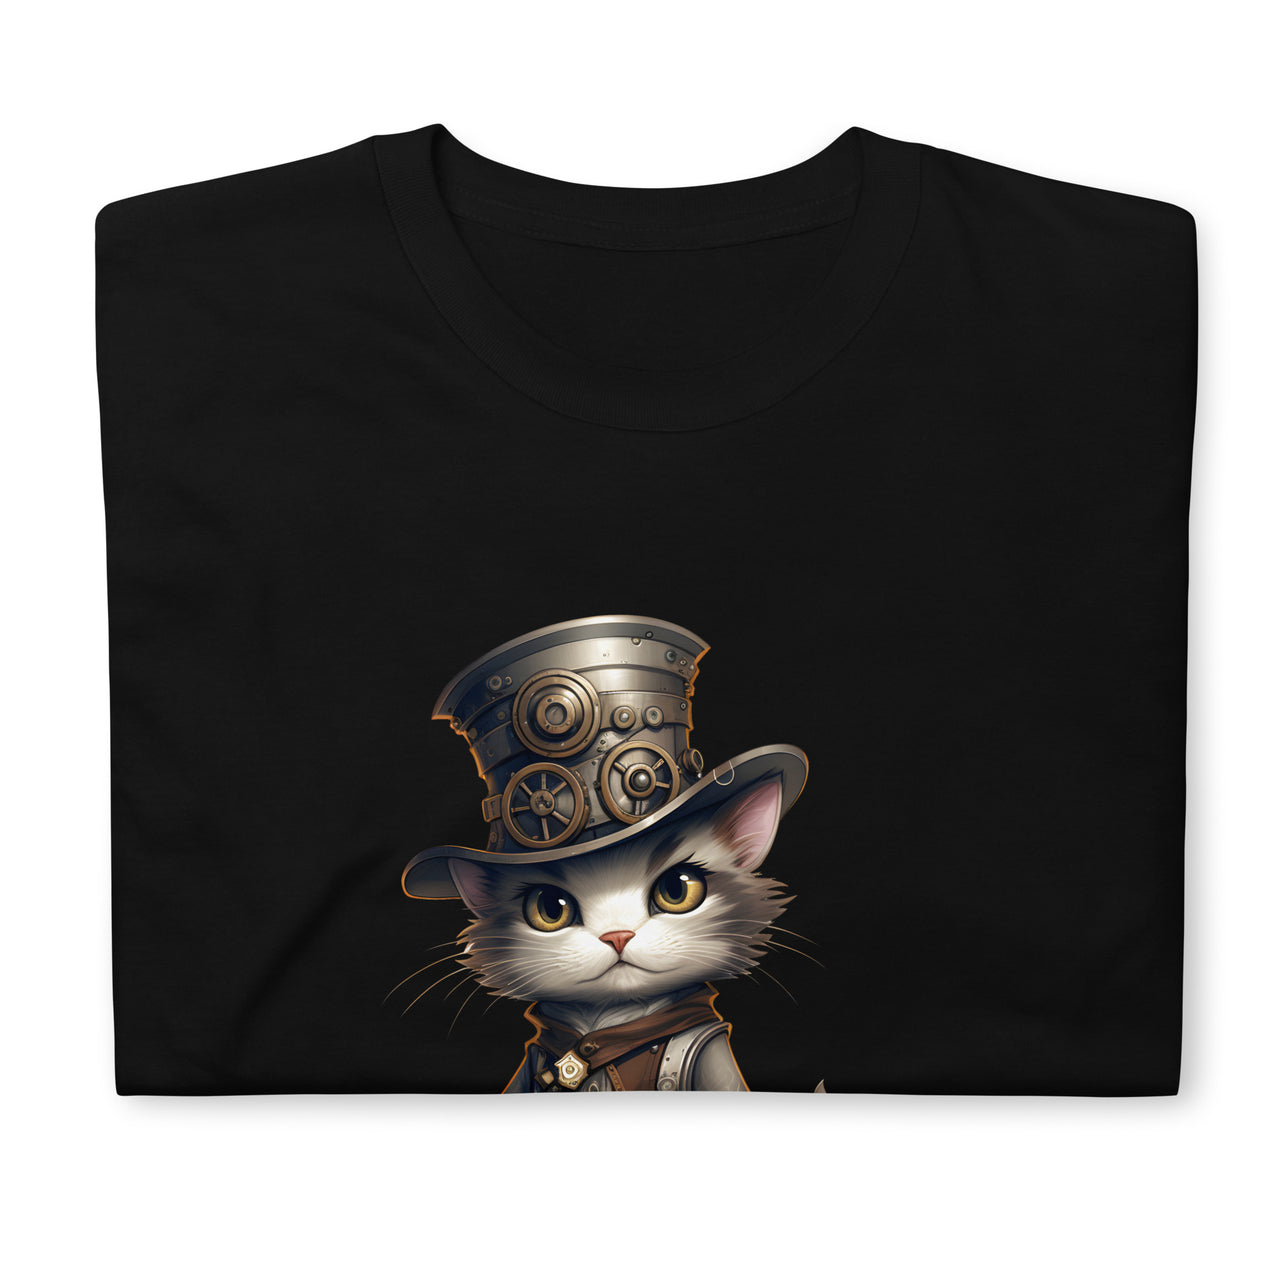 Steampunk Anime Cat Gear Up T-Shirt